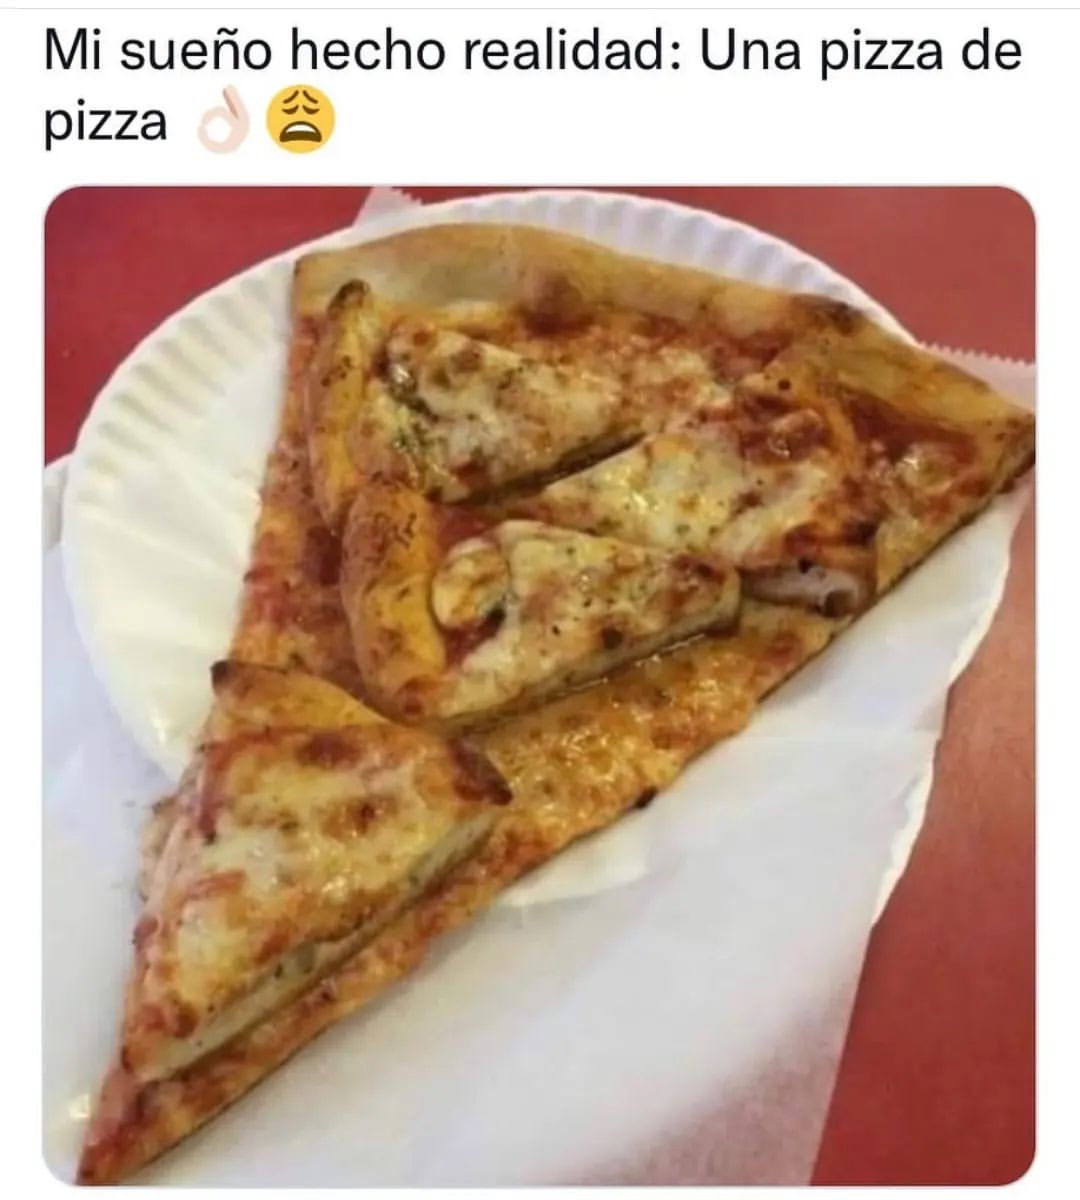 Mi sueño hecho realidad: Una pizza de pizza.